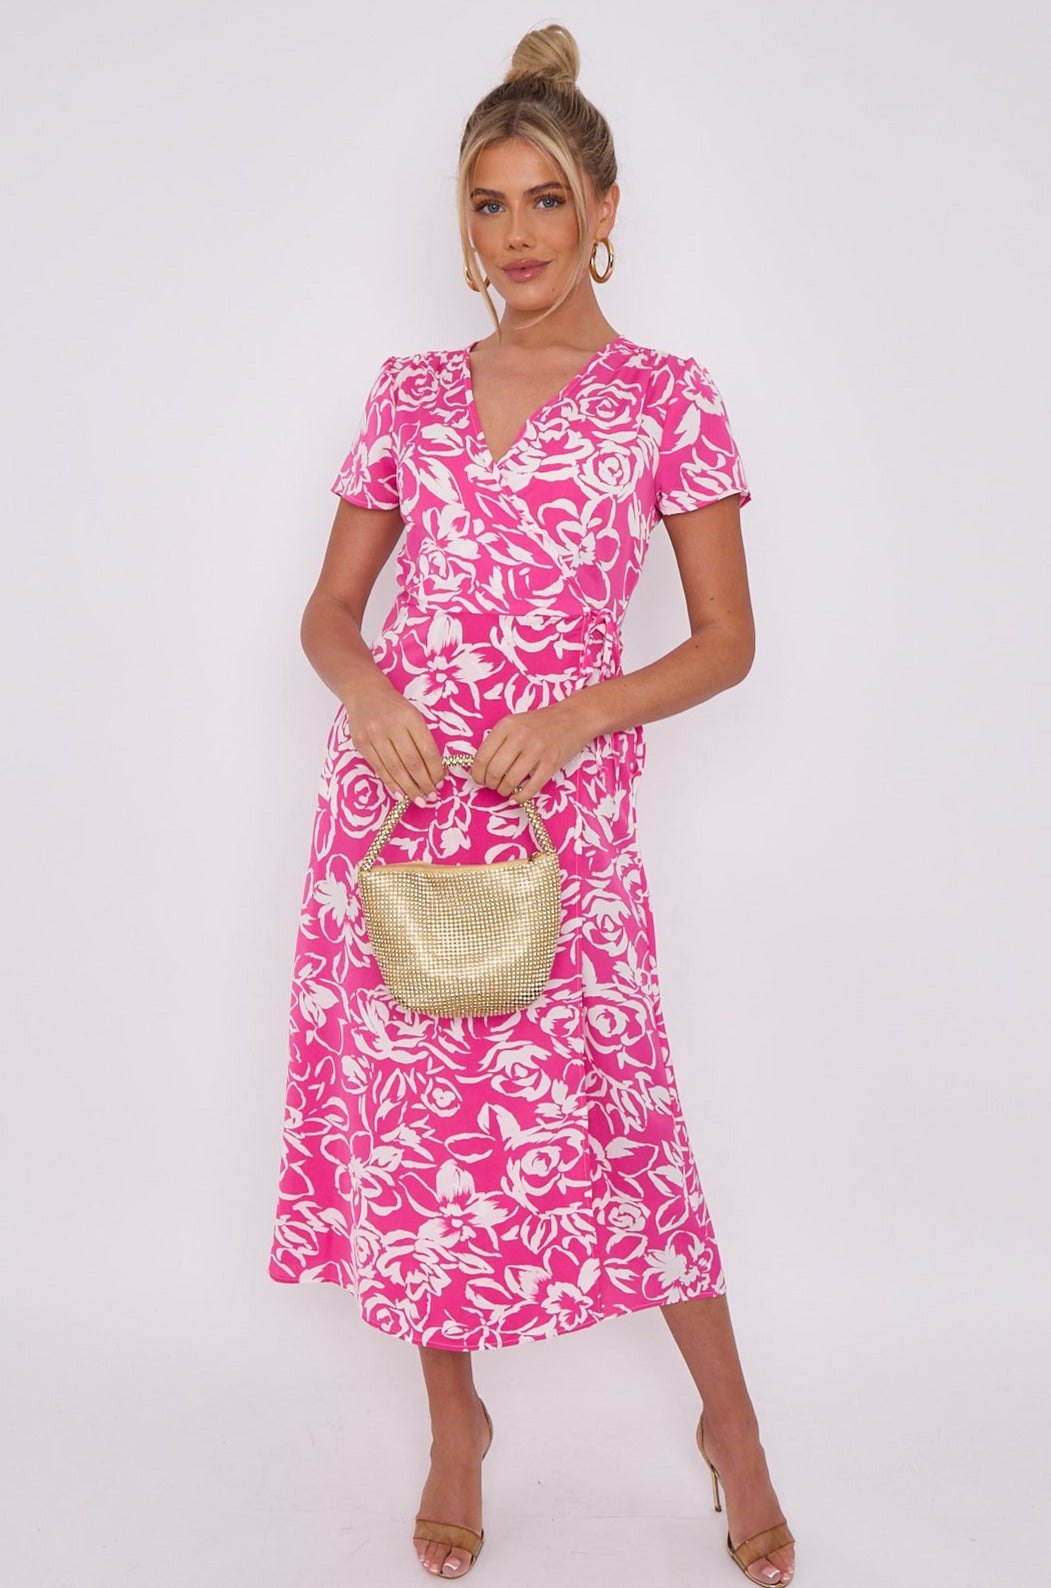 Love Sunshine Pink Floral Print Wrapped Midi Dress Brunch Dress Dress with Pockets Everyday Dress Garden Party Dress Holiday Dress LS-2118 Short Sleeve Dress Summer Dress Tea Dress Wedding Guest Dress